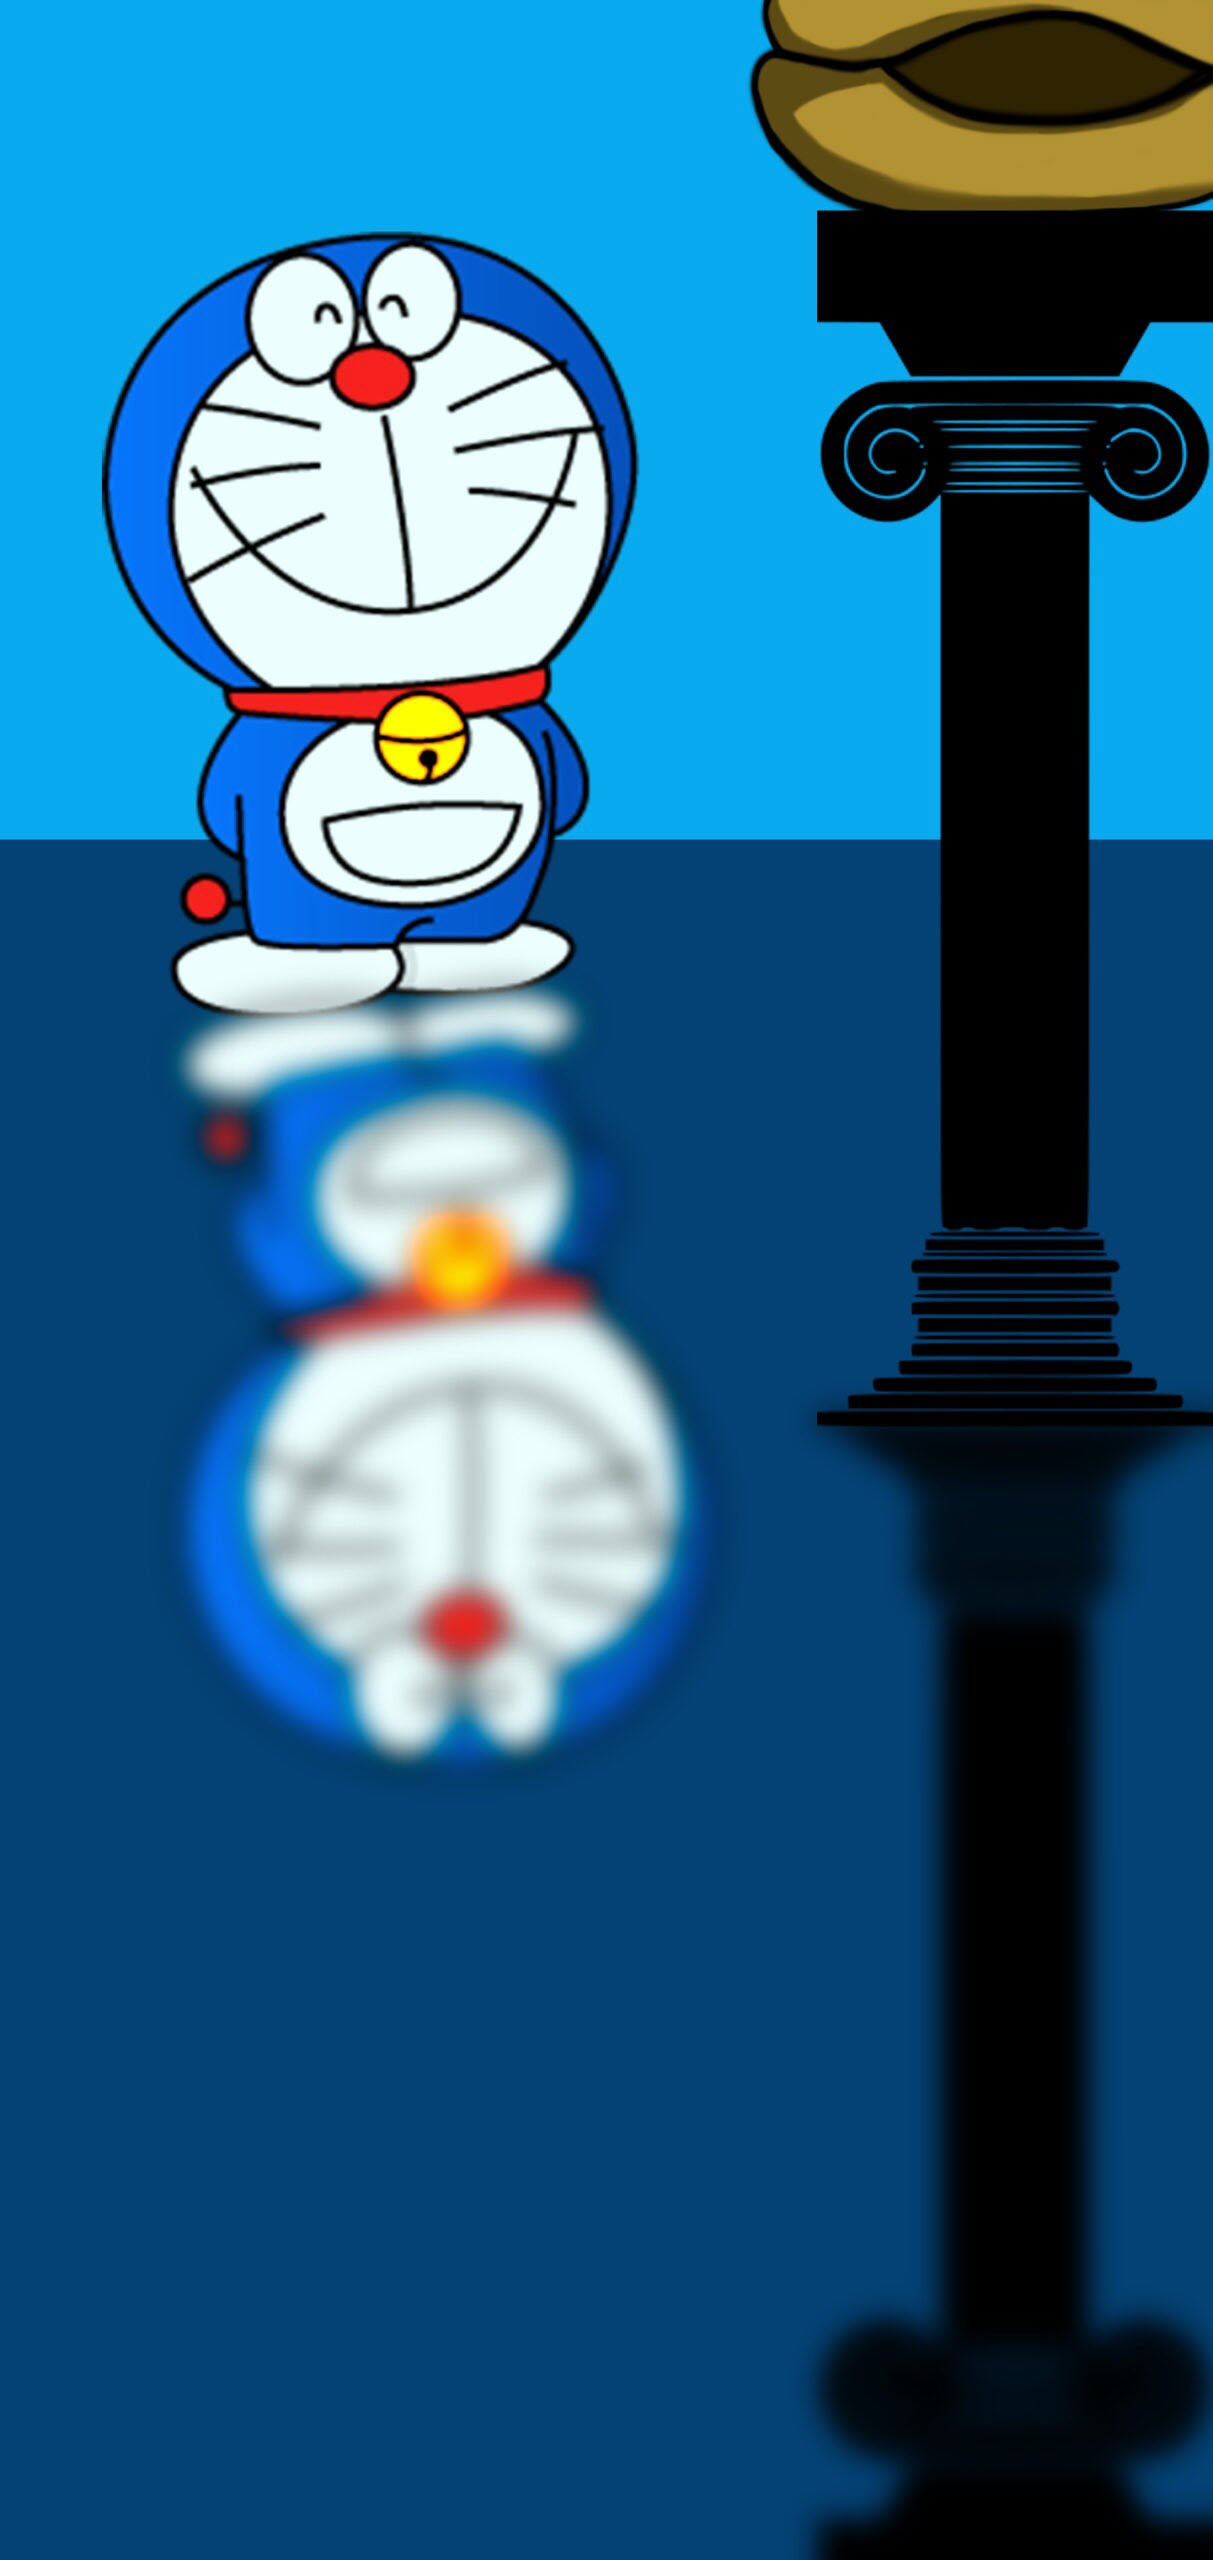 Hình nền Doraemon đẹp cho máy tính và điện thoại - Quantrimang.com |  Doraemon, Anime, Nhật ký nghệ thuật